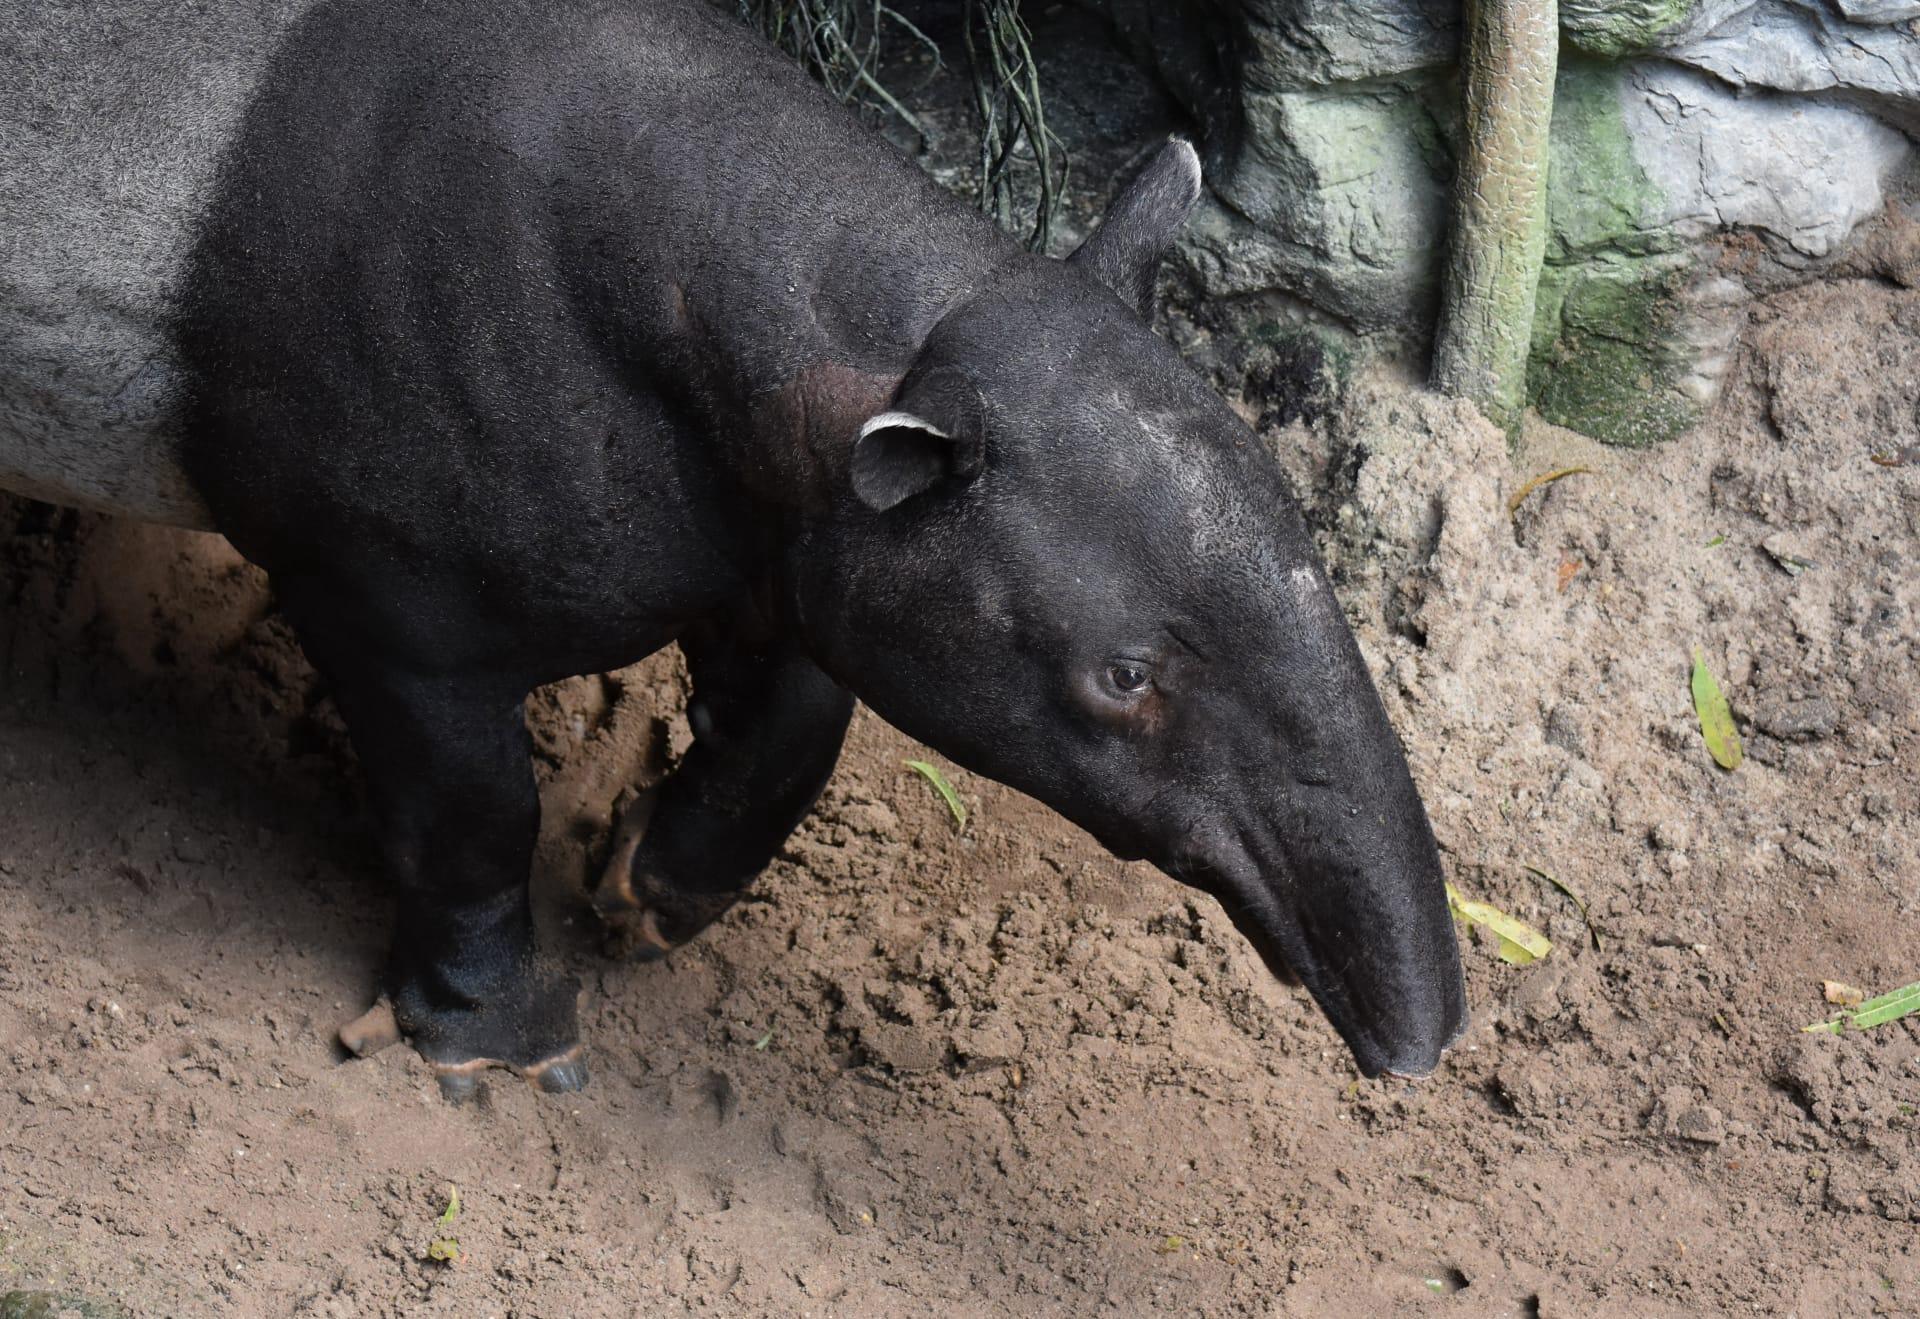 Tapir pictures